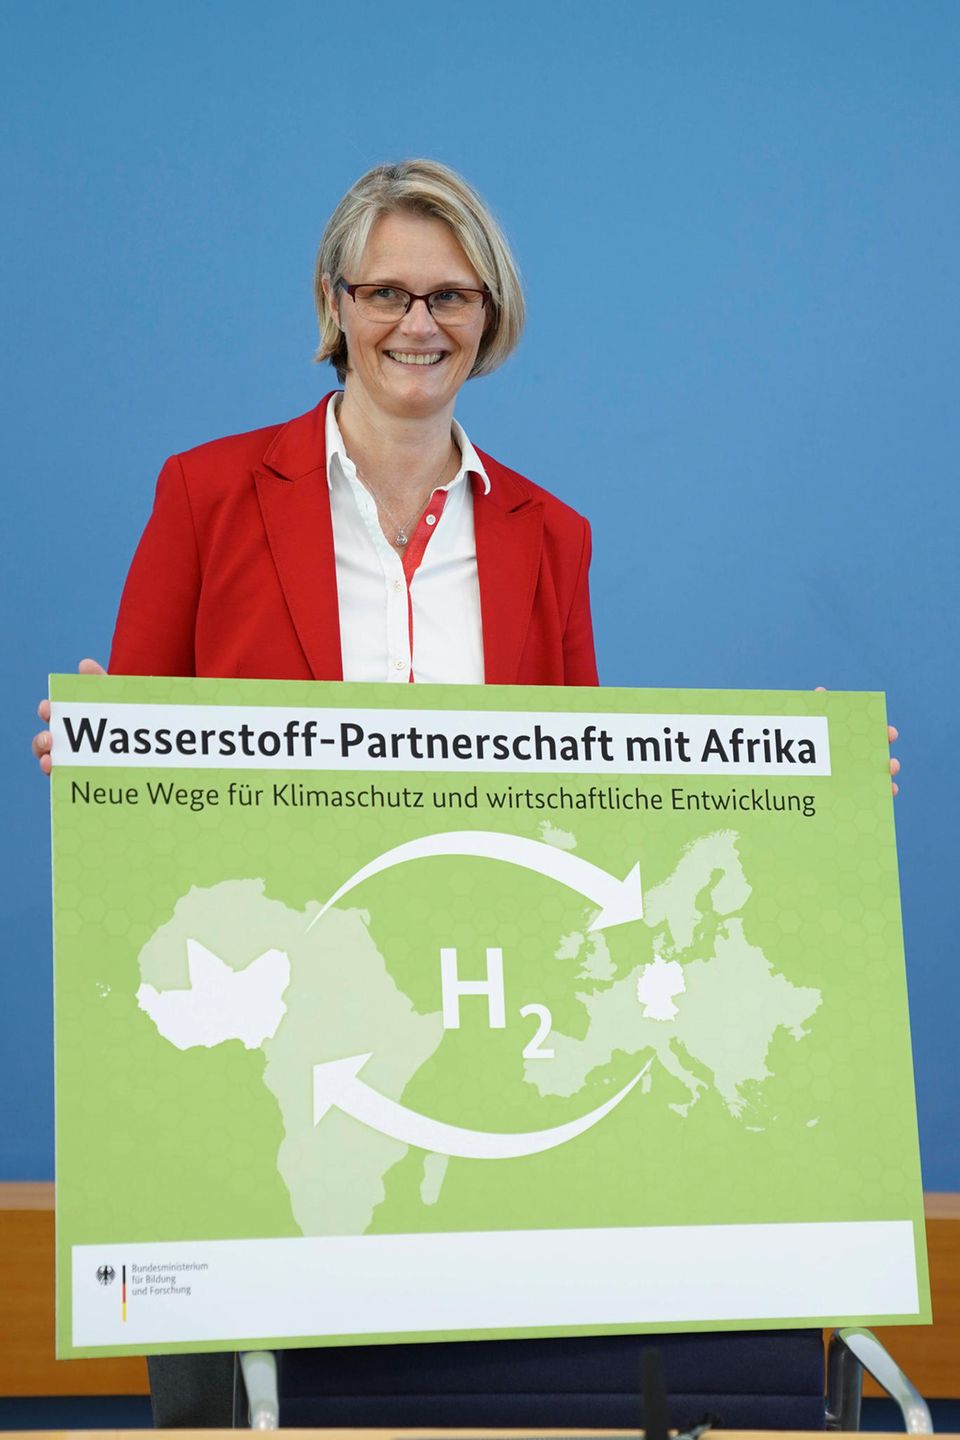 Forschungsministerin Anja Karliczek setzt große Hoffnungen auf eine Wasserstoff-Partnerschaft mit Westafrika